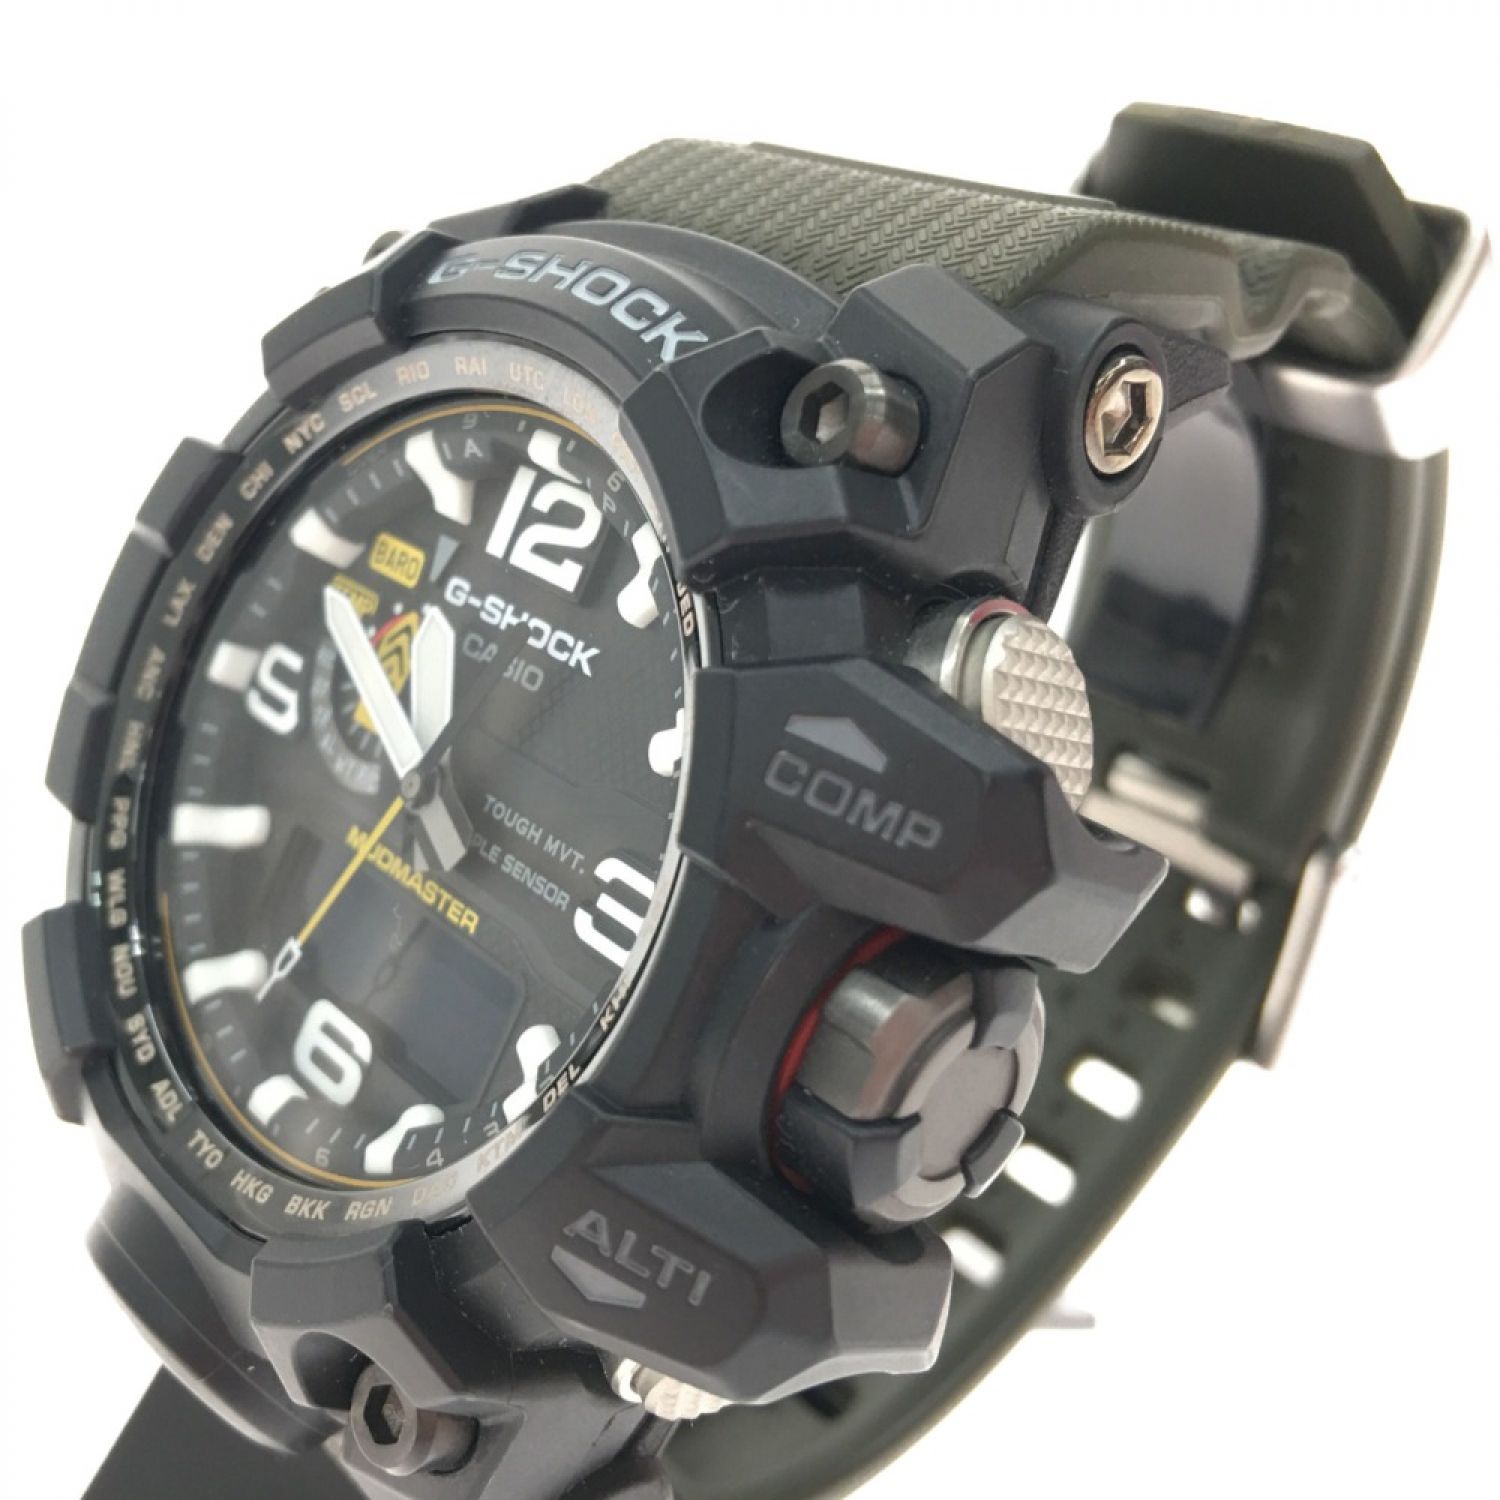 ▼▼CASIO カシオ メンズ腕時計 G-SHOCK 電波ソーラー マッドマスター GWG-1000 ブラック×カーキ